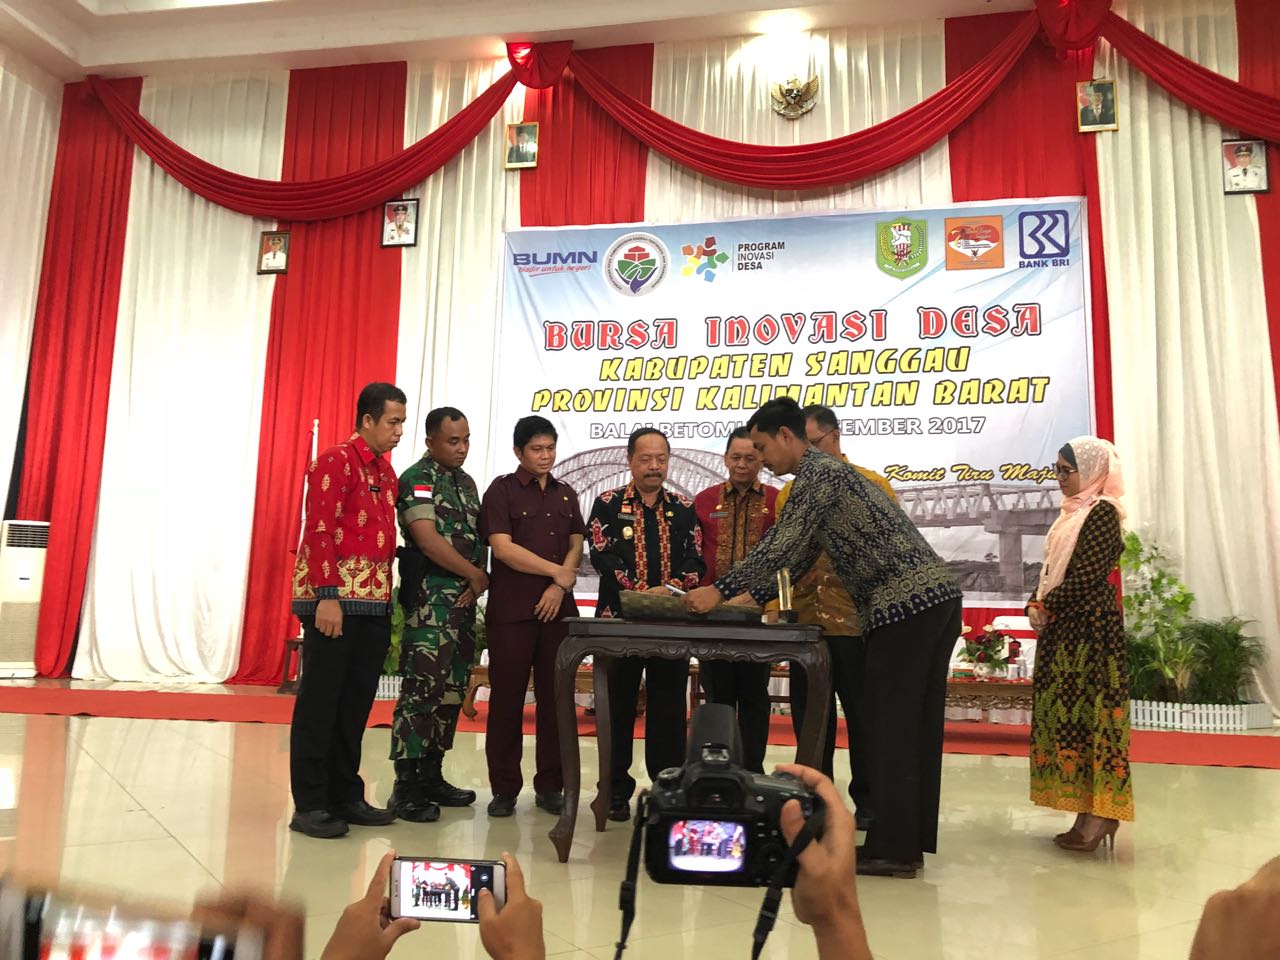 DPMPEMDES Kabupaten Sanggau Perdana Gelar Bursa Inovasi Desa